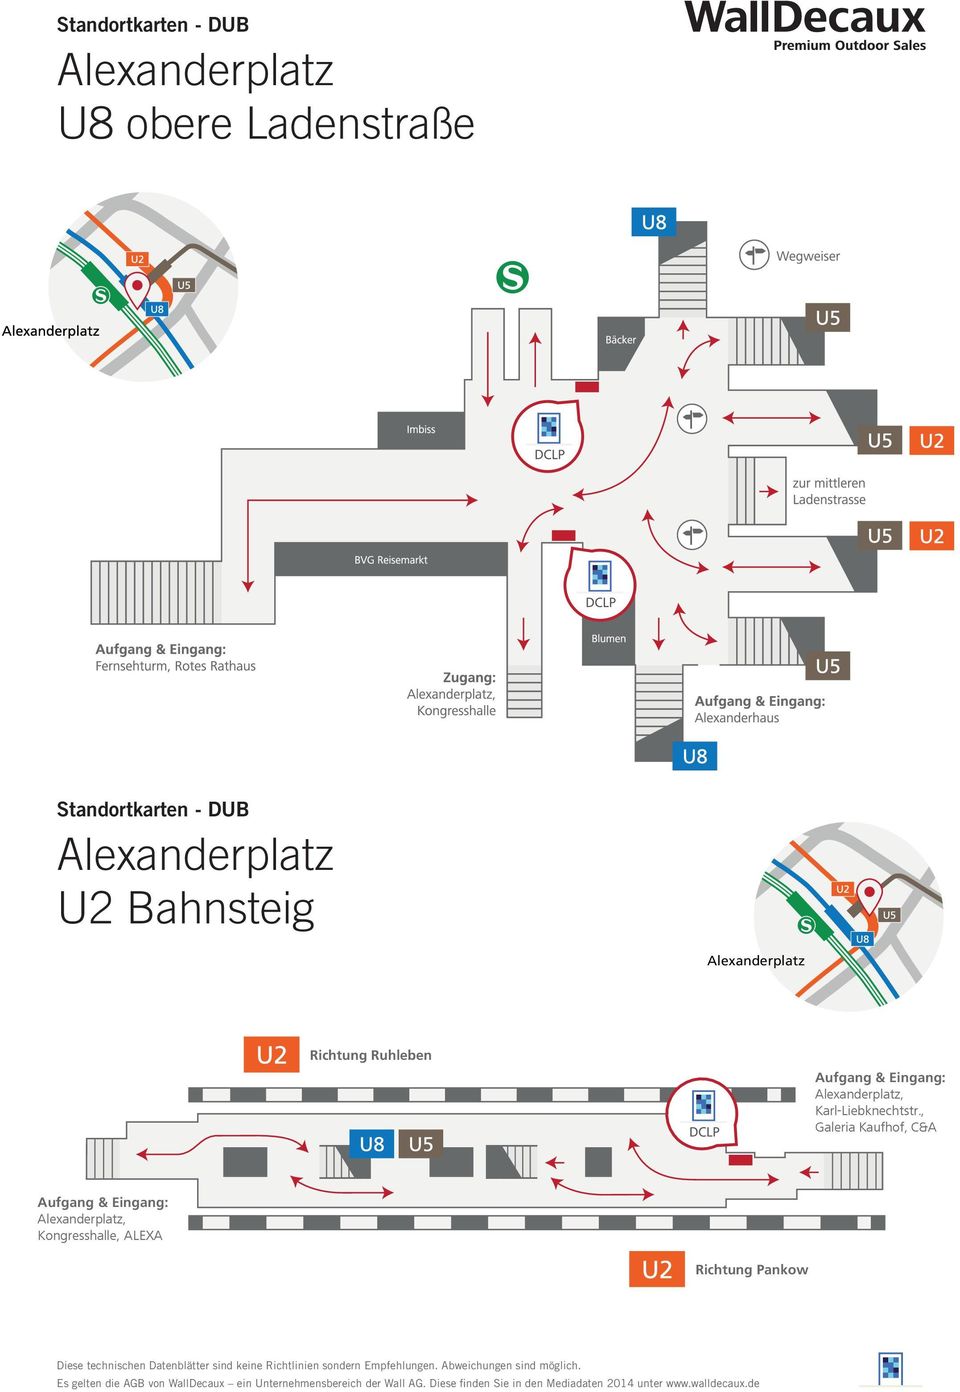 Aufgang & Eingang: Alexanderplatz, Karl-Liebknechtstr.